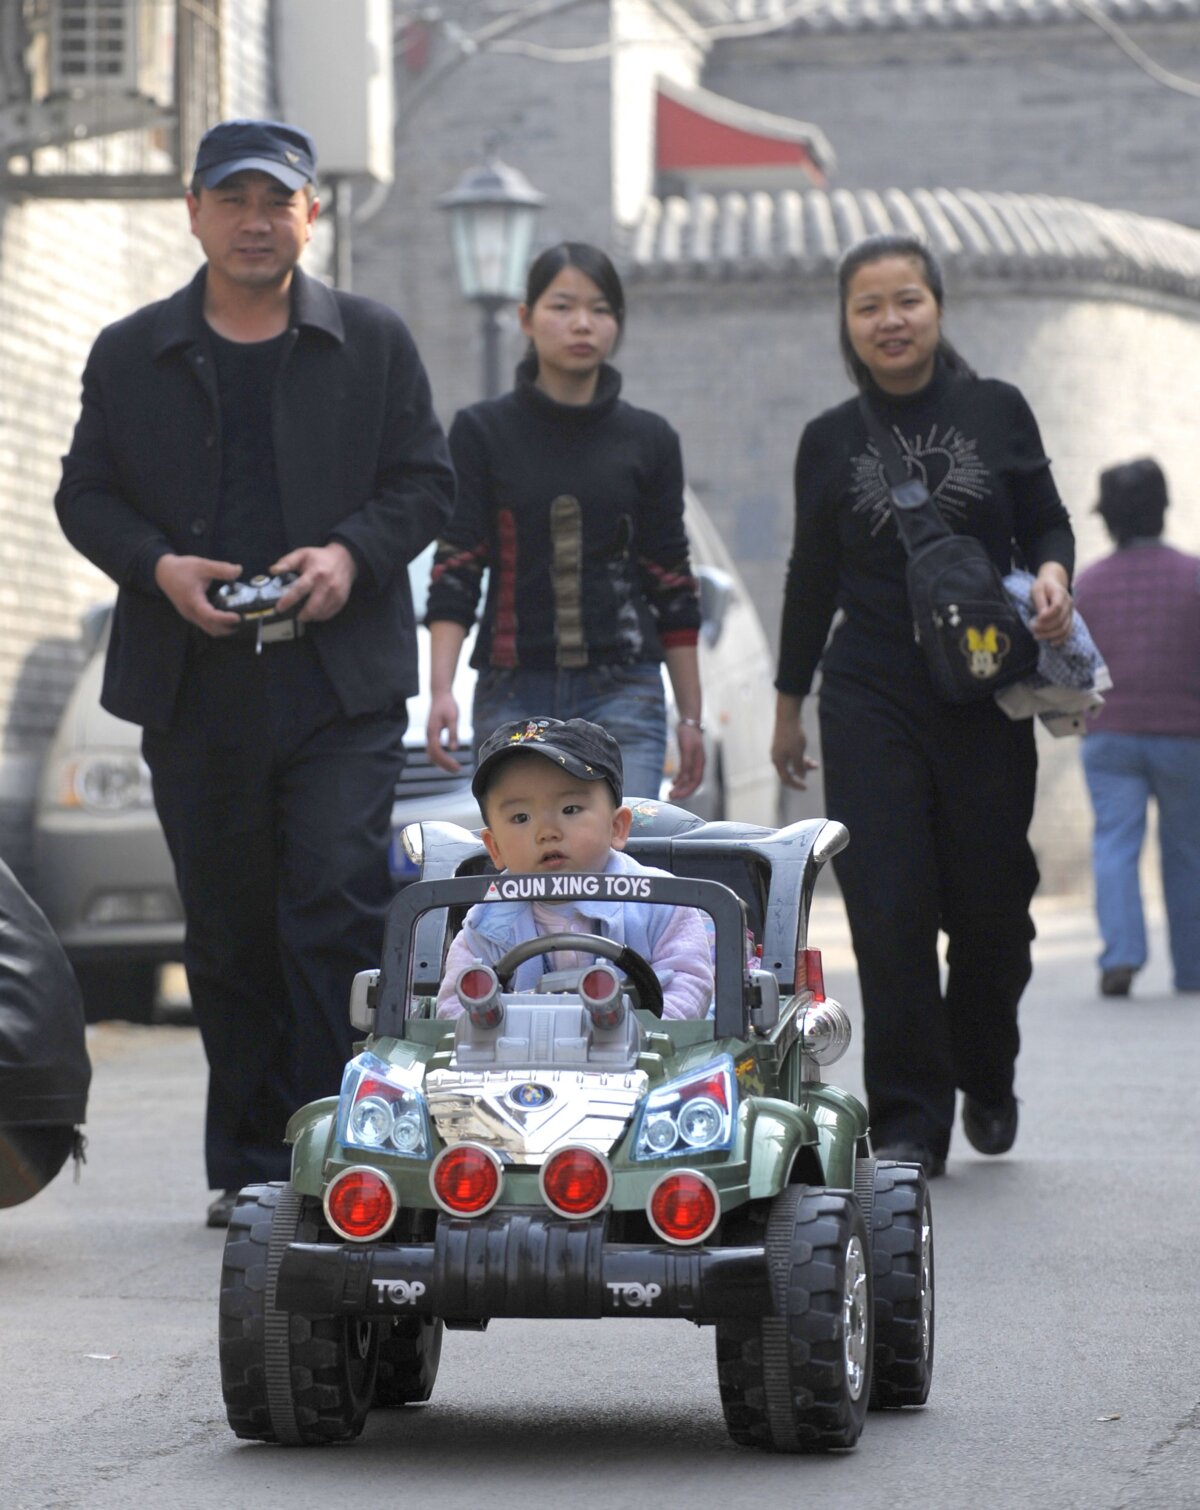 Một cậu bé ngồi trong chiếc xe hơi đồ chơi sang trọng, đi bên cạnh gia đình dọc theo một con phố ở Bắc Kinh, ngày 21/10/2011. (Ảnh: Liu Jin/AFP qua Getty Images)